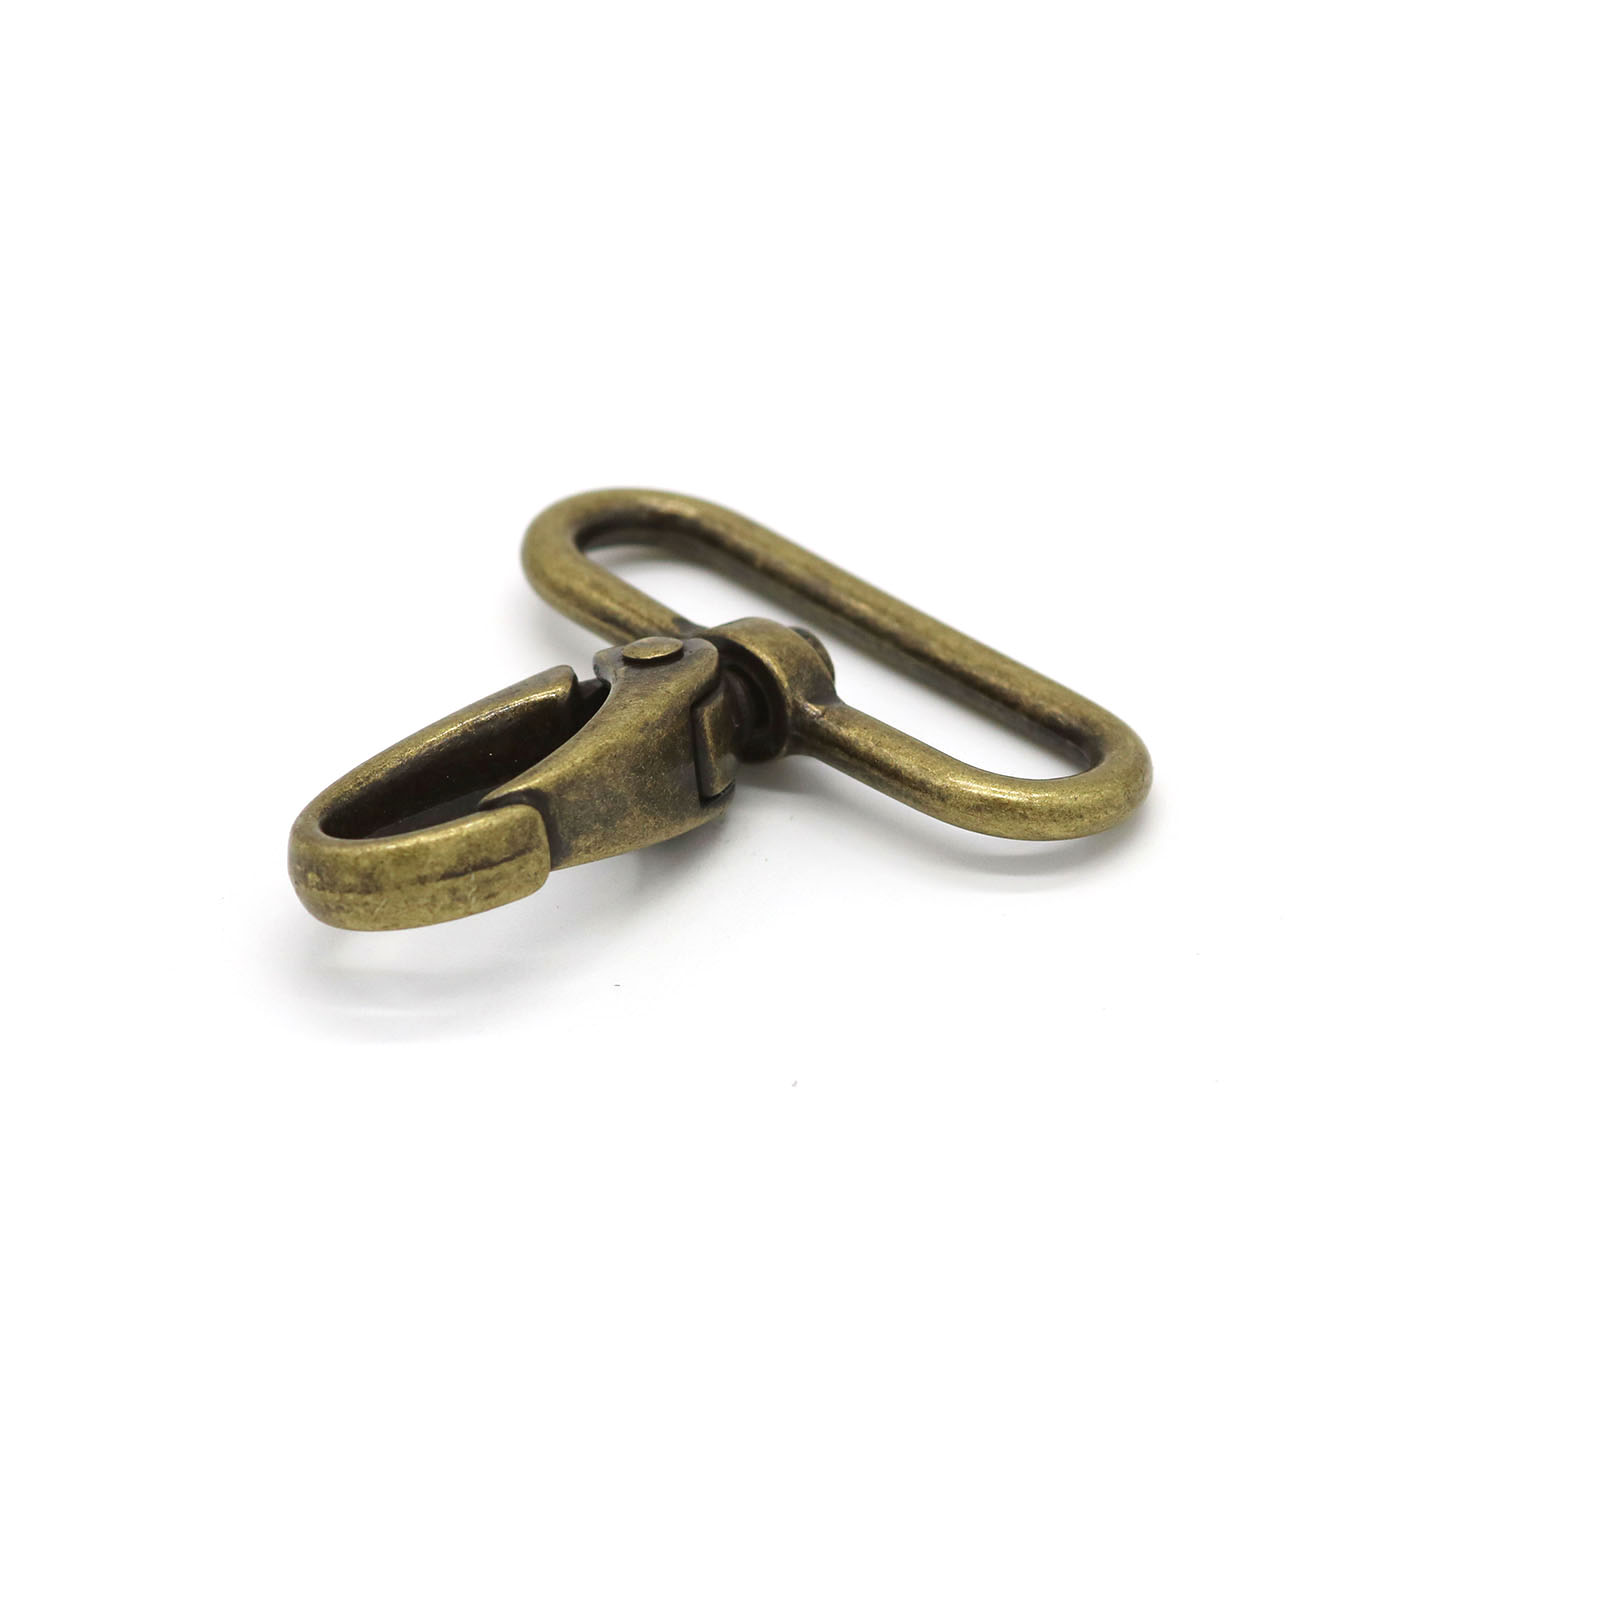 Aged brass (brownish colour) Snap Hook + Loop – Haesloop Agencies